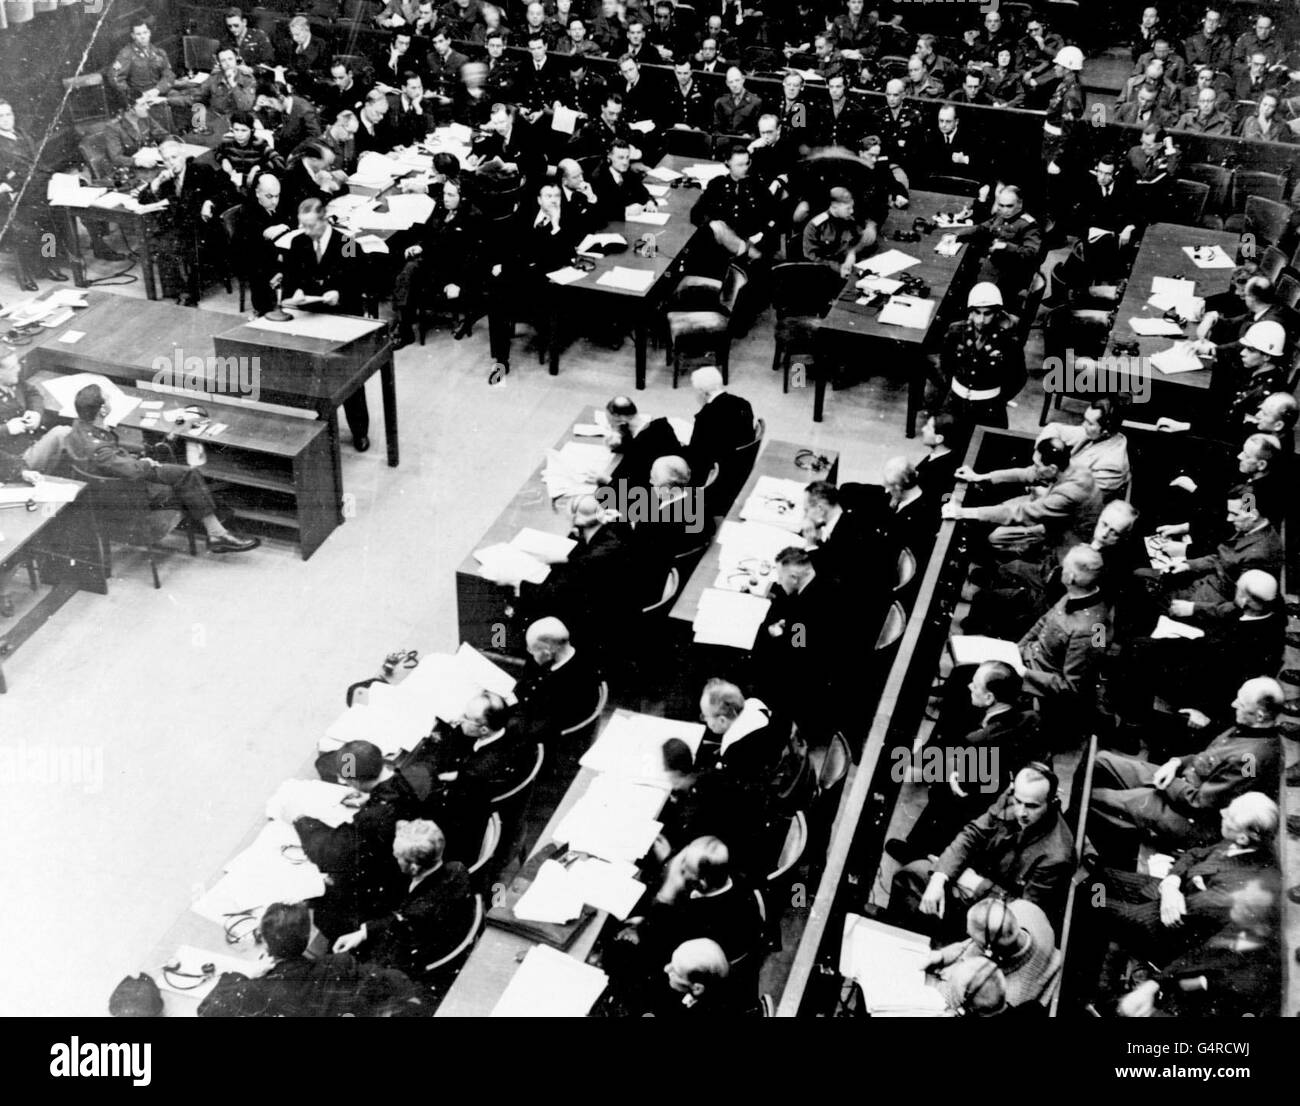 Una visione generale dei processi di Norimberga dopo la seconda guerra mondiale in corso presso il Palazzo di Giustizia. Gli ex leader nazisti della Germania possono essere visti seduti a destra della fotografia. Essi includono Goering, Ribbentrop, Keitel, Jodl, Kaltenbrunner e Hess. Foto Stock